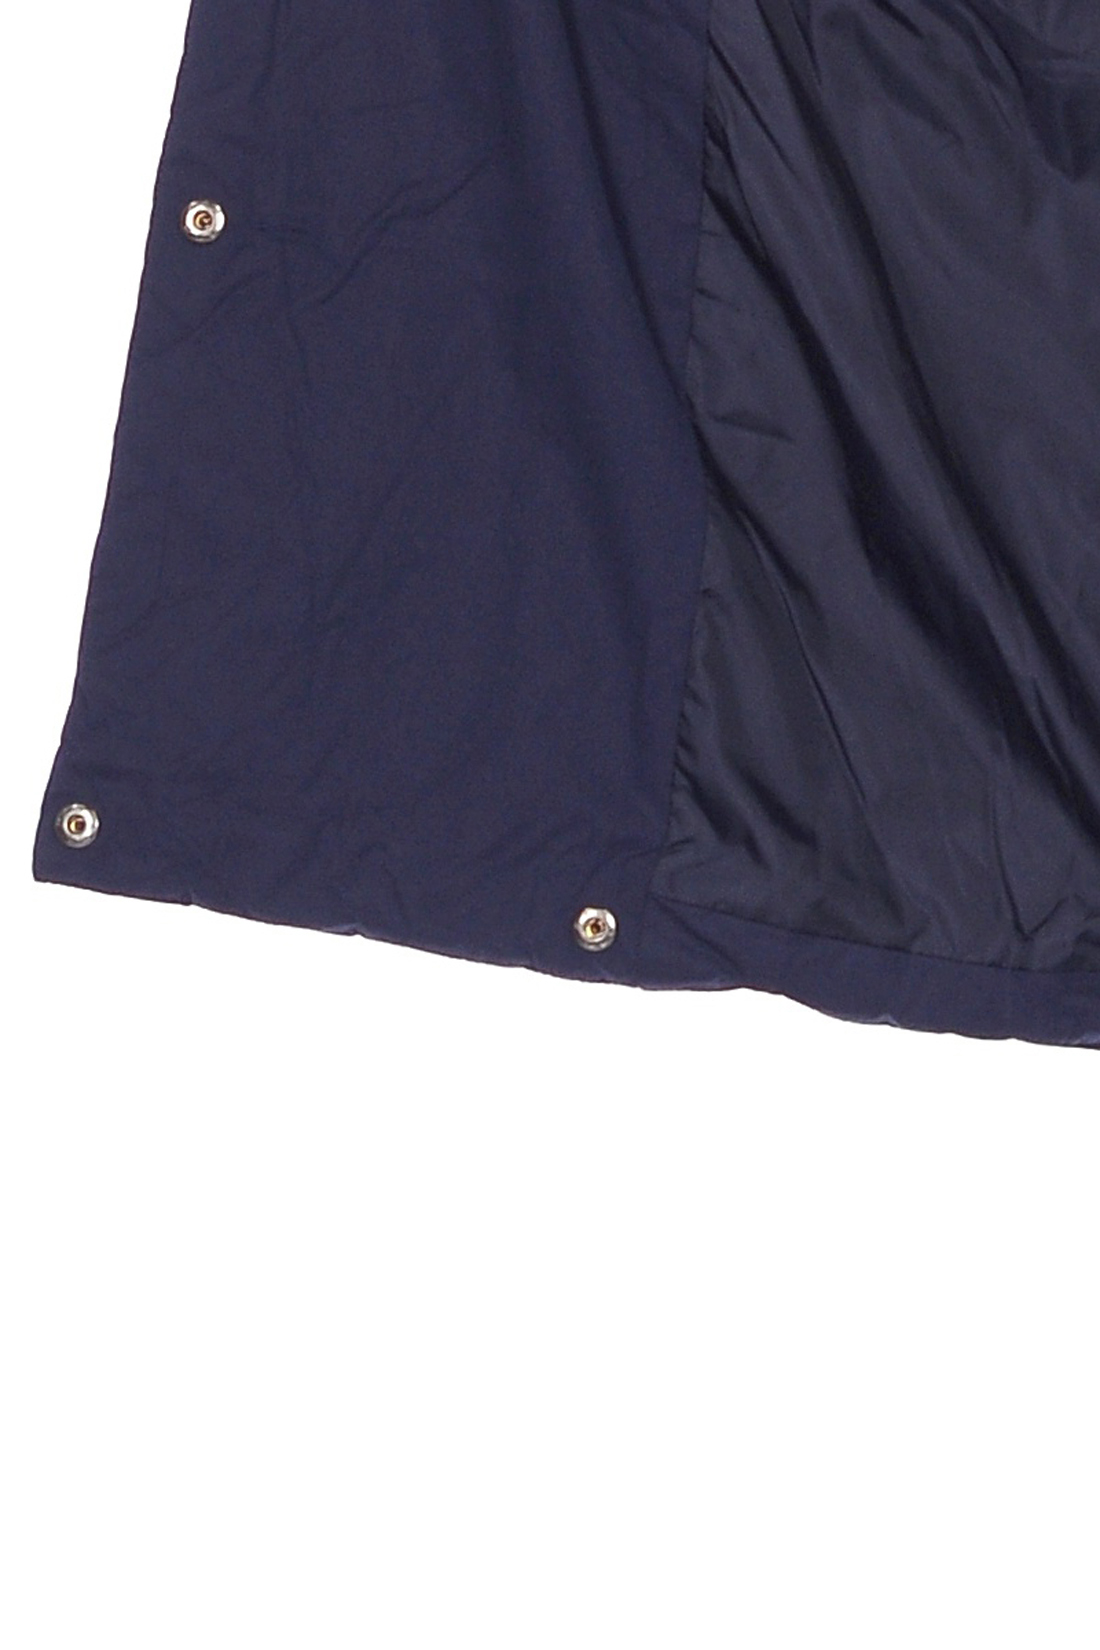 Синяя куртка-кокон (арт. baon B038526), размер XXL, цвет синий Синяя куртка-кокон (арт. baon B038526) - фото 4